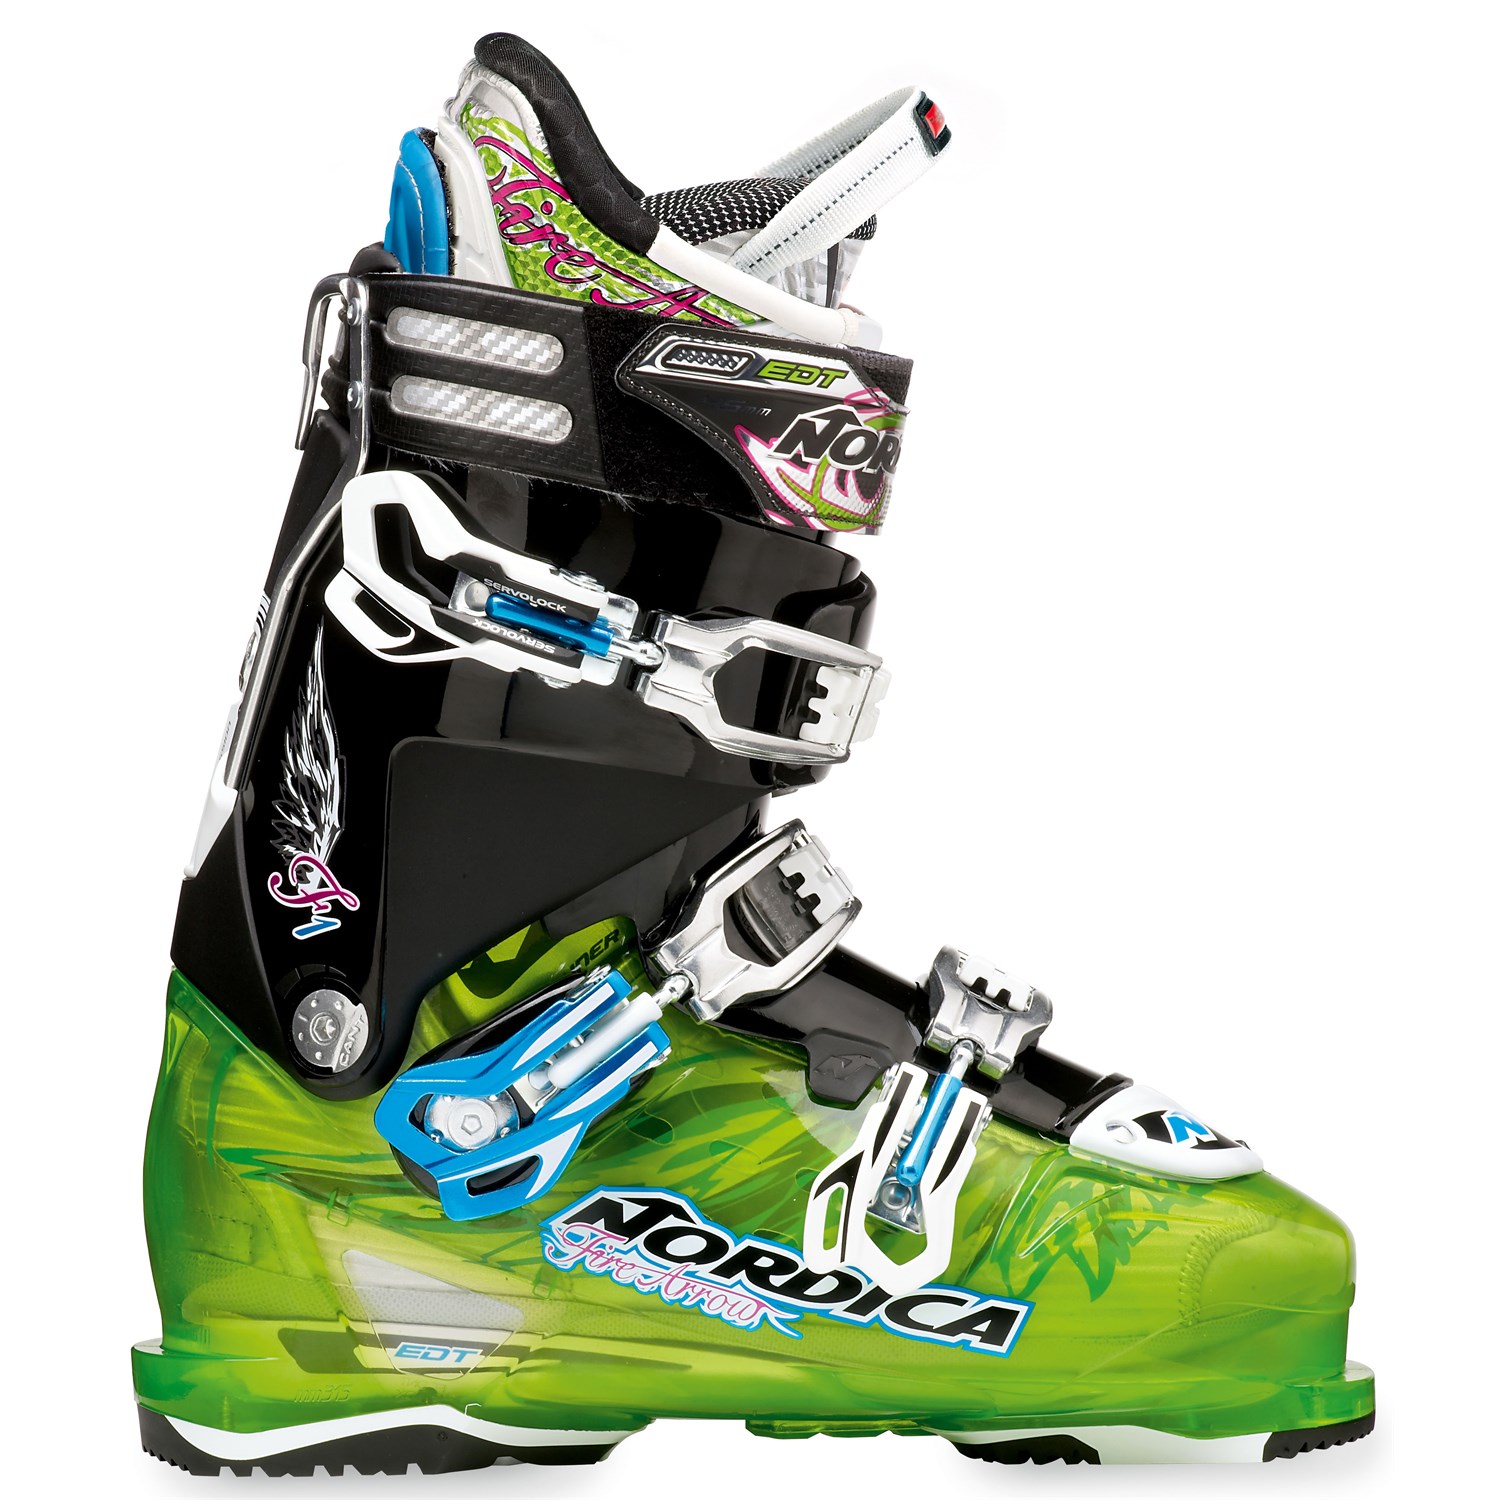 Nordica FireArrow F1 Ski Boots 2013 | evo